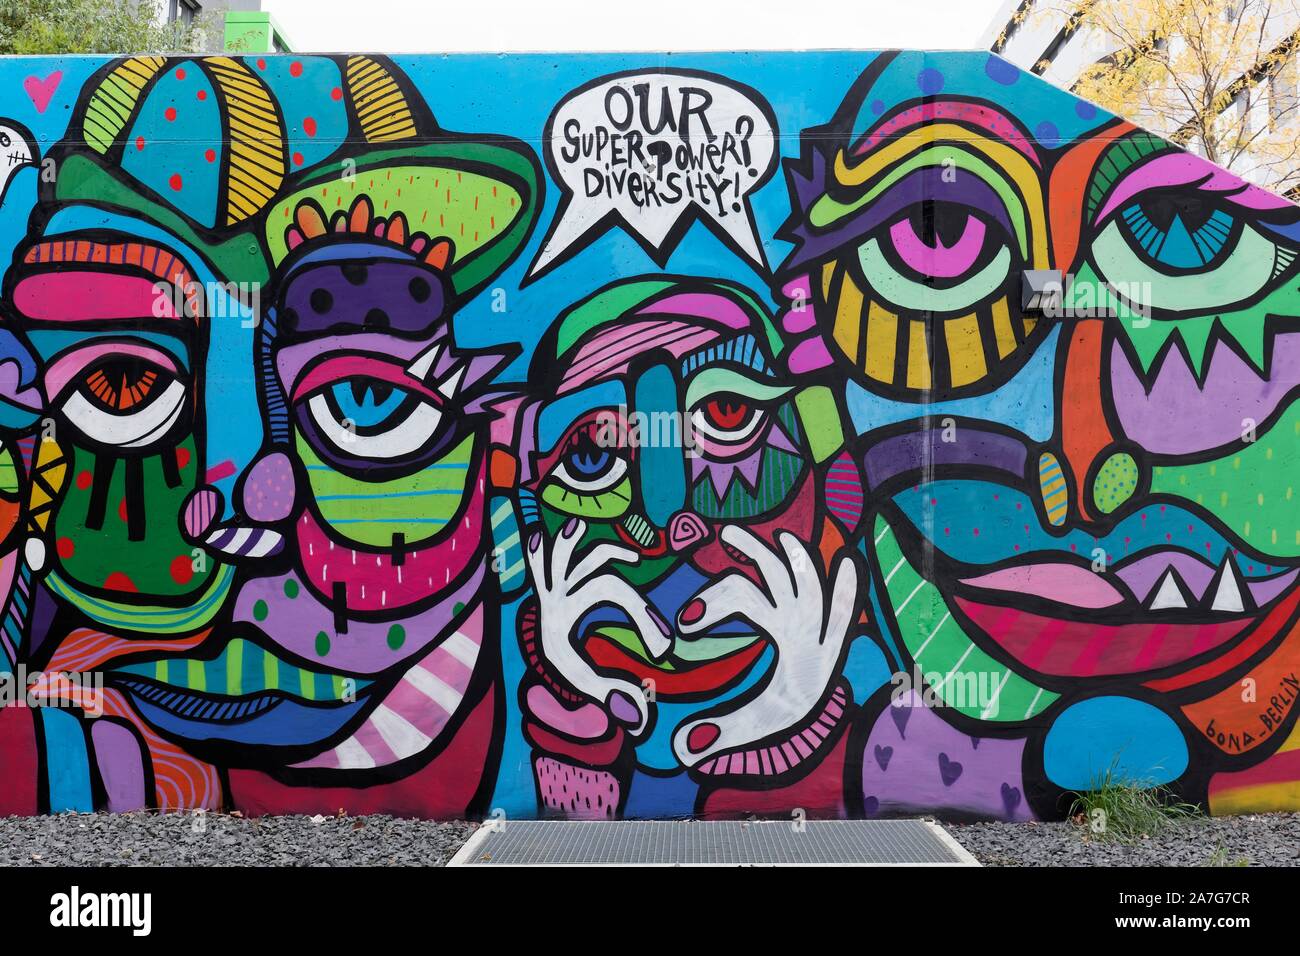 Visages colorés, résumé, symbolisent la diversité, la diversité plutôt que de discrimination, politique fresque de Bona Berlin, Streetart, 40 Grad Art Urbain Banque D'Images